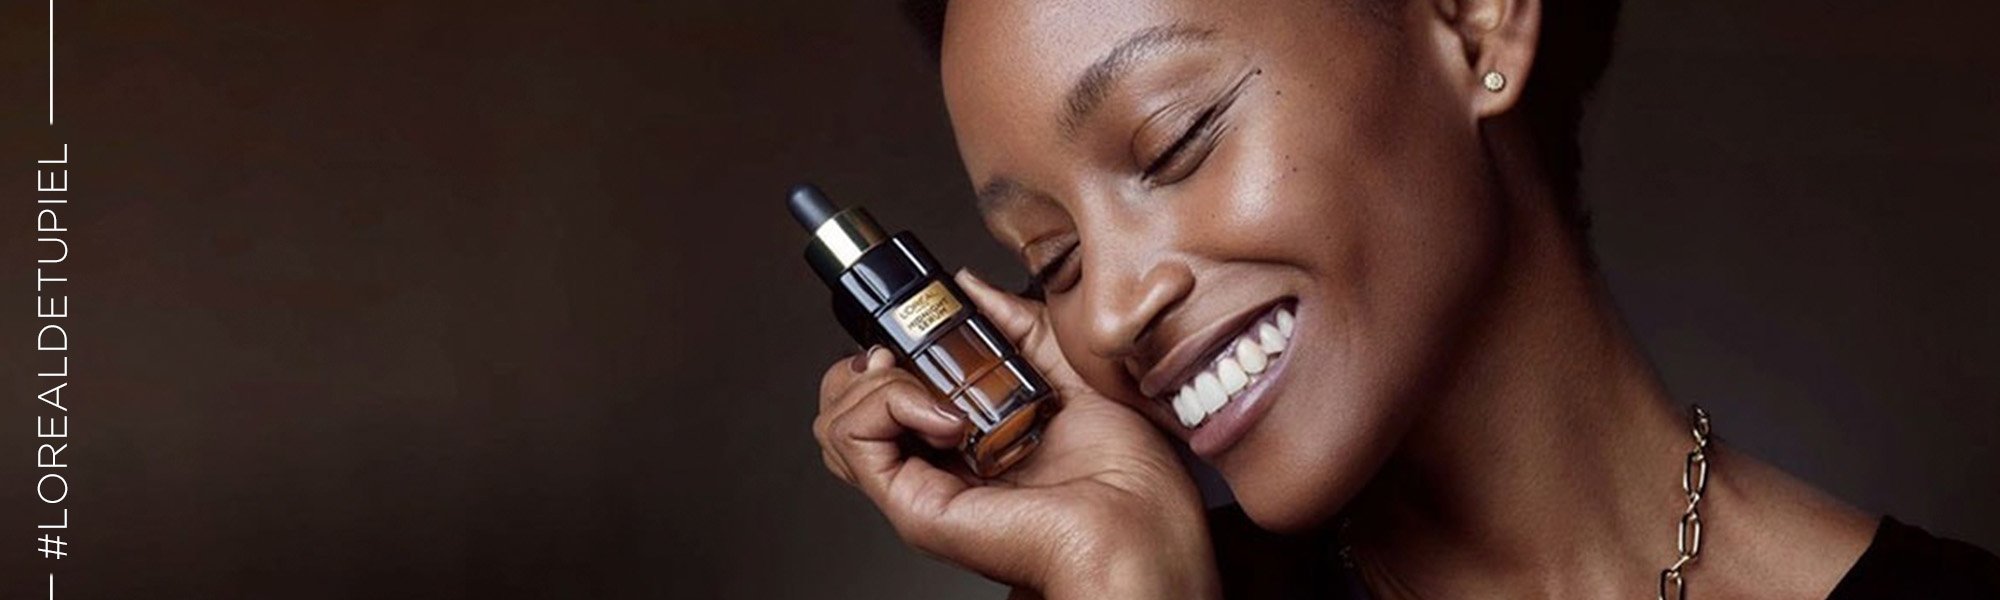 Beneficios Vitamina E para la piel | L'Oréal Paris